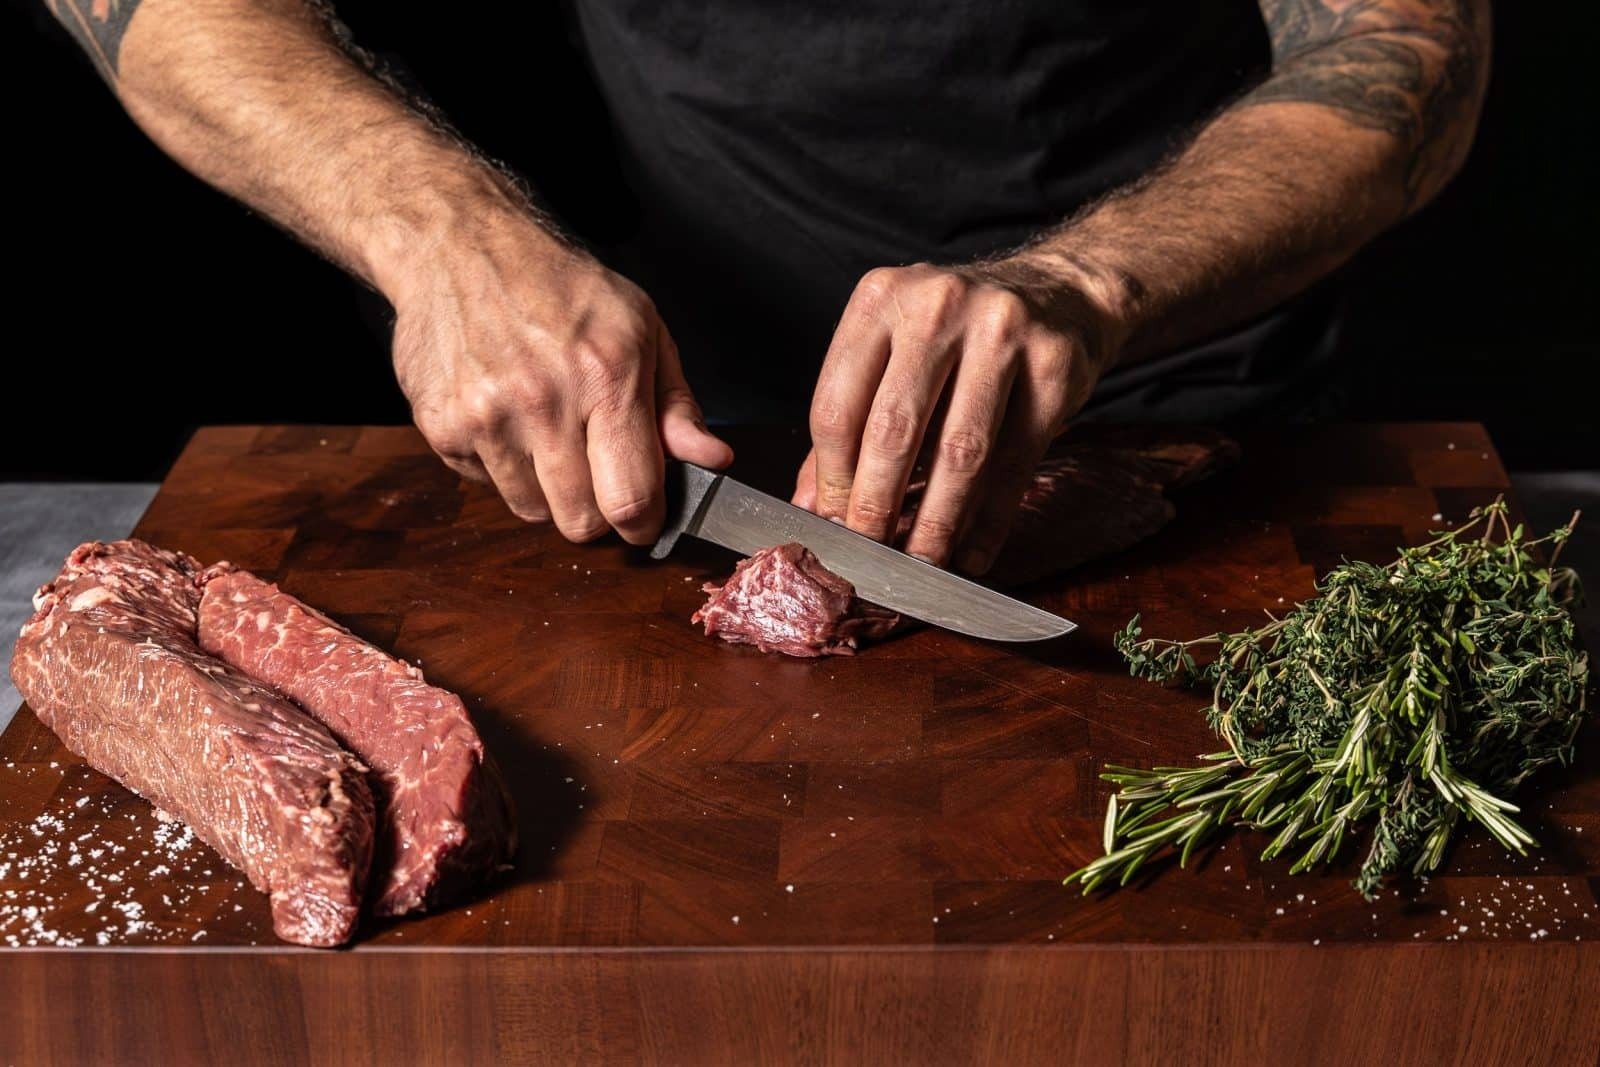 Butcher Knives - Fillet, Boning, or Steak Knife Use - Butcher Magazine